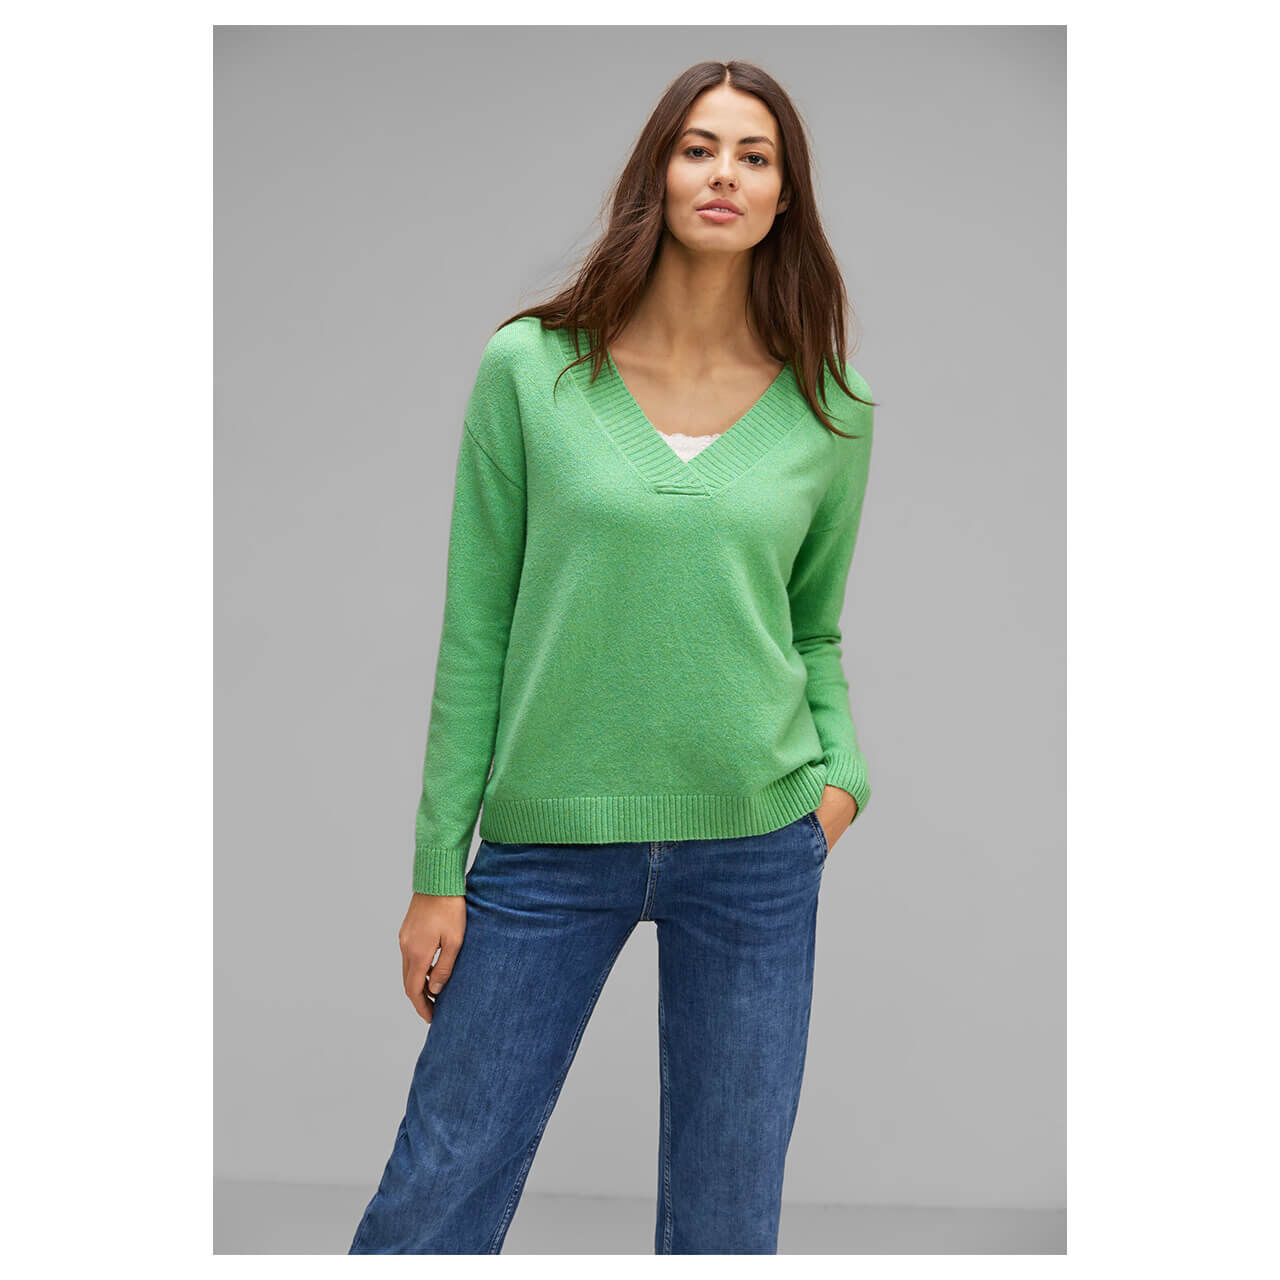 Street One Damen Pullover V-neck Sweater light green melange